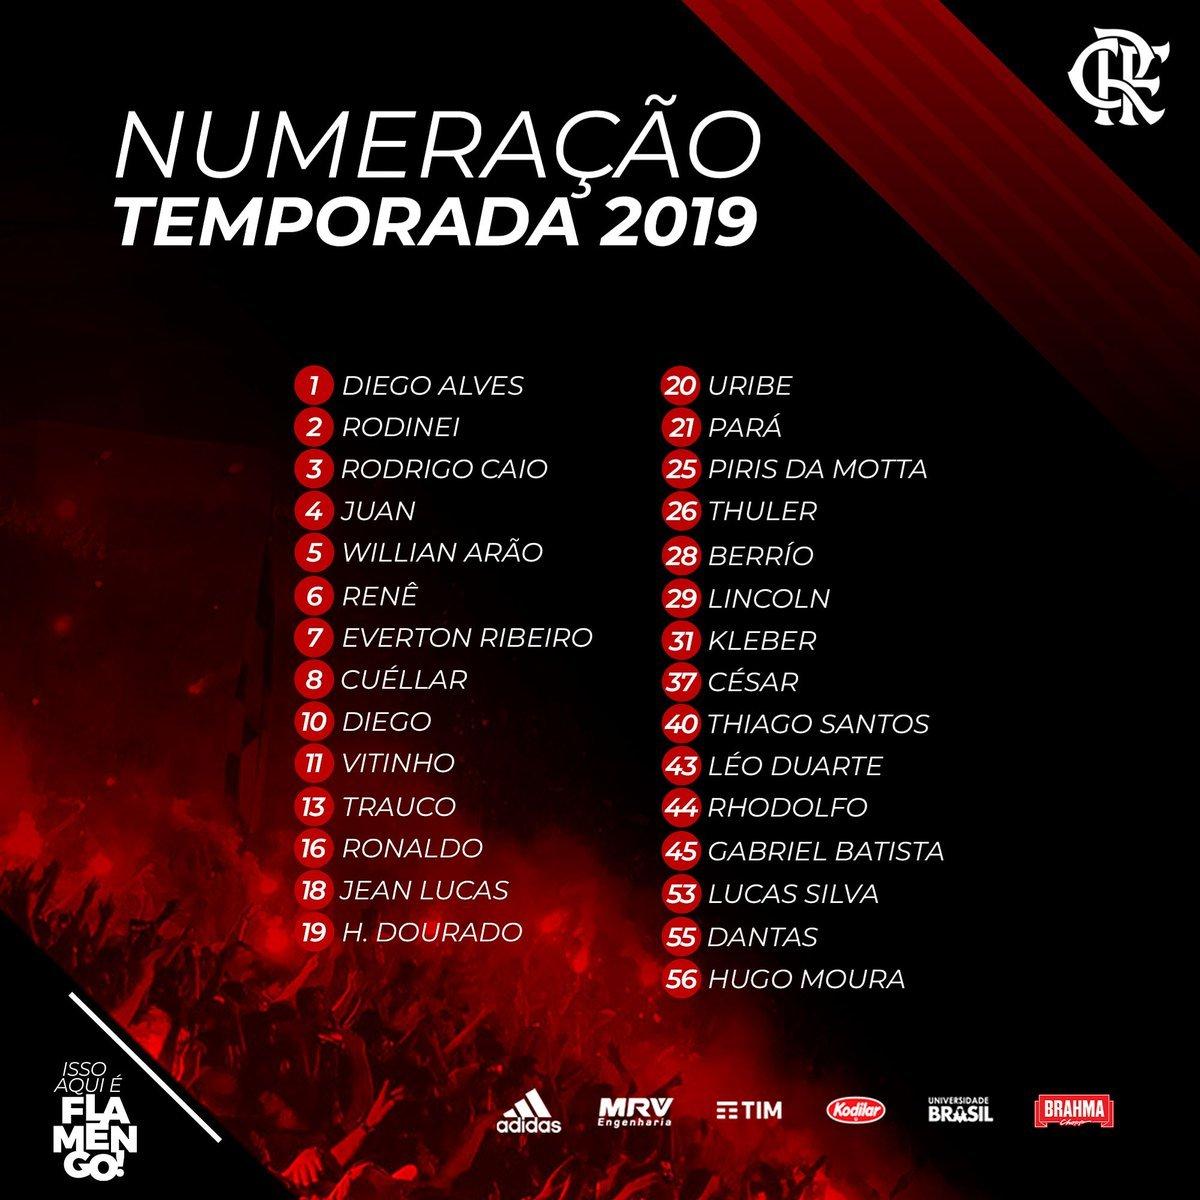 Numeração Flamengo